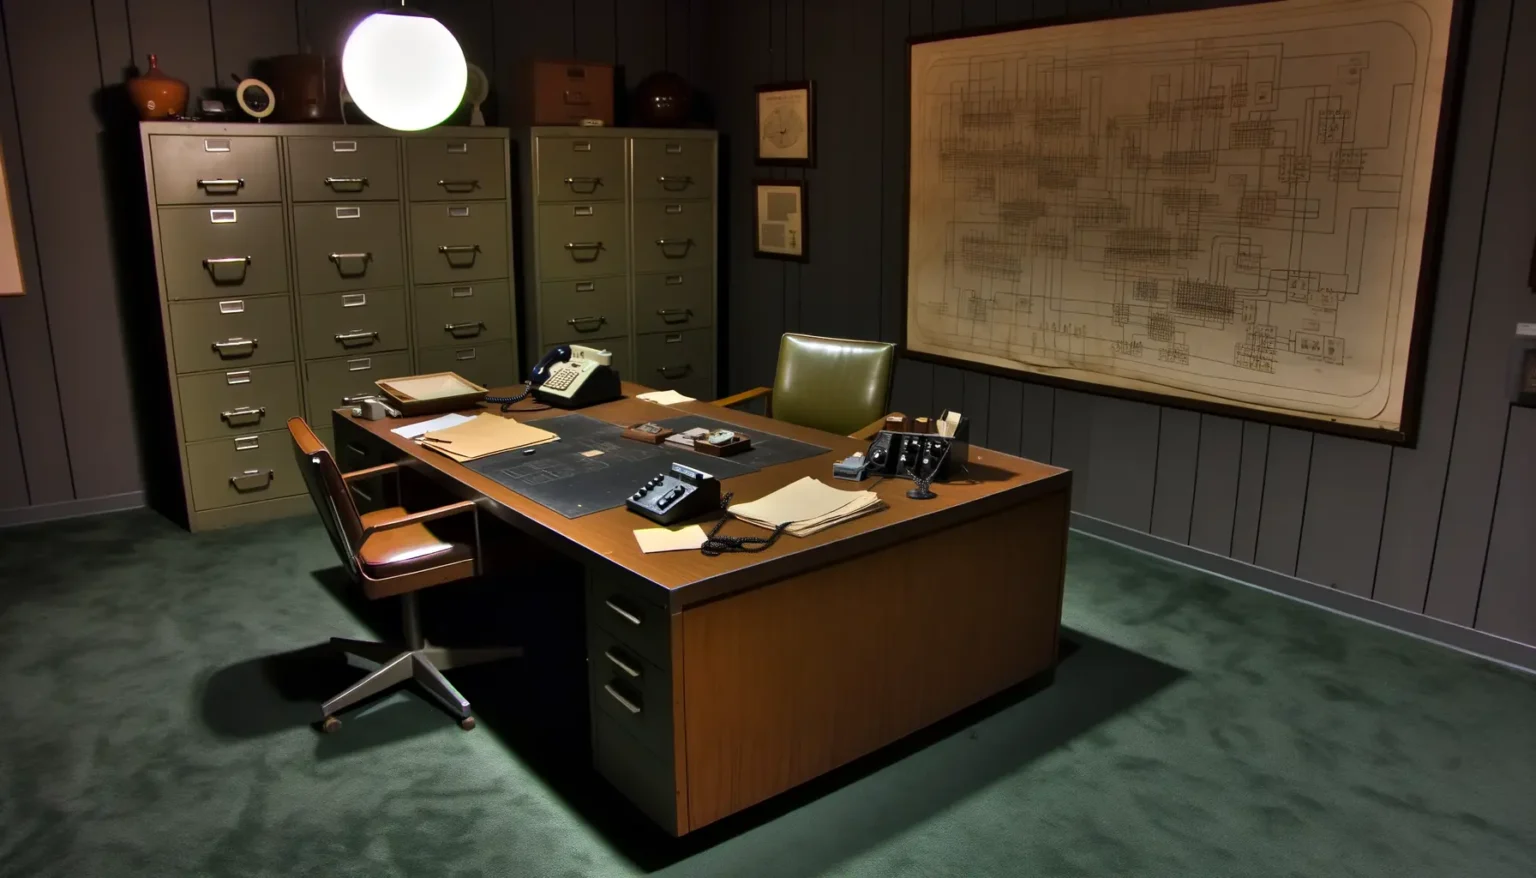 Ein klassisch eingerichtetes Büro mit dunklem Holzschreibtisch, darauf ein Telefon, Notizblöcke und Schreibwaren. Hinter dem Schreibtisch stehen Aktenschränke. An der Wand hängt ein großes technisches Zeichnungsschema. Der Raum wirkt altmodisch und ist schwach beleuchtet.